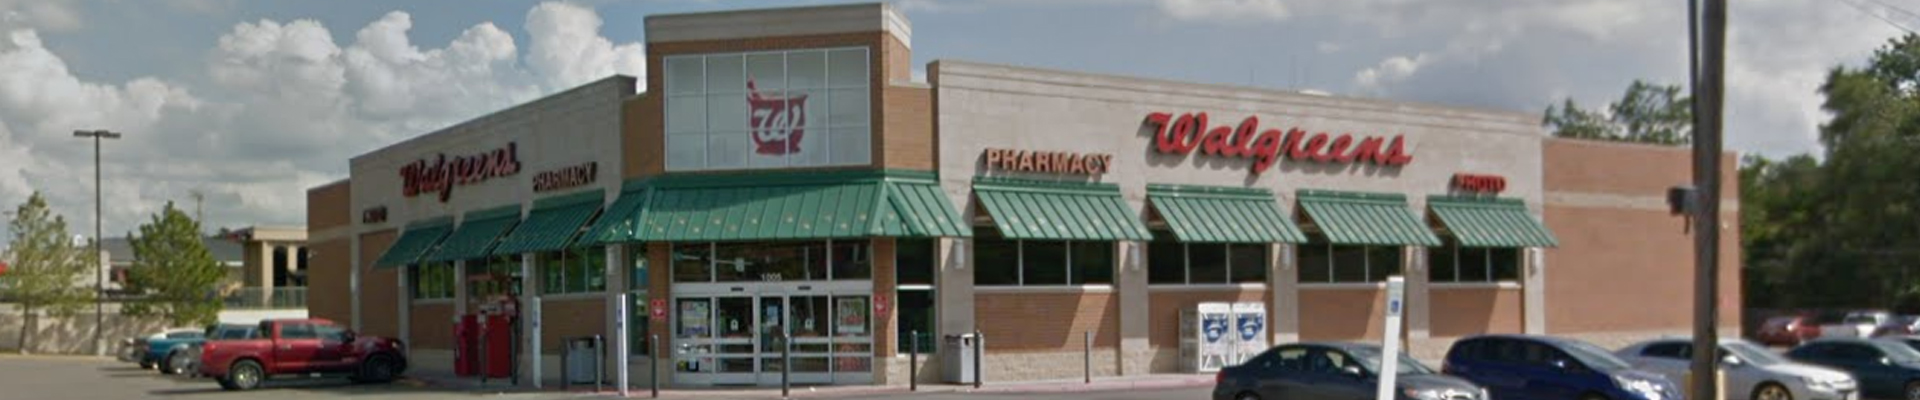 Walgreens – Ada, Oklahoma